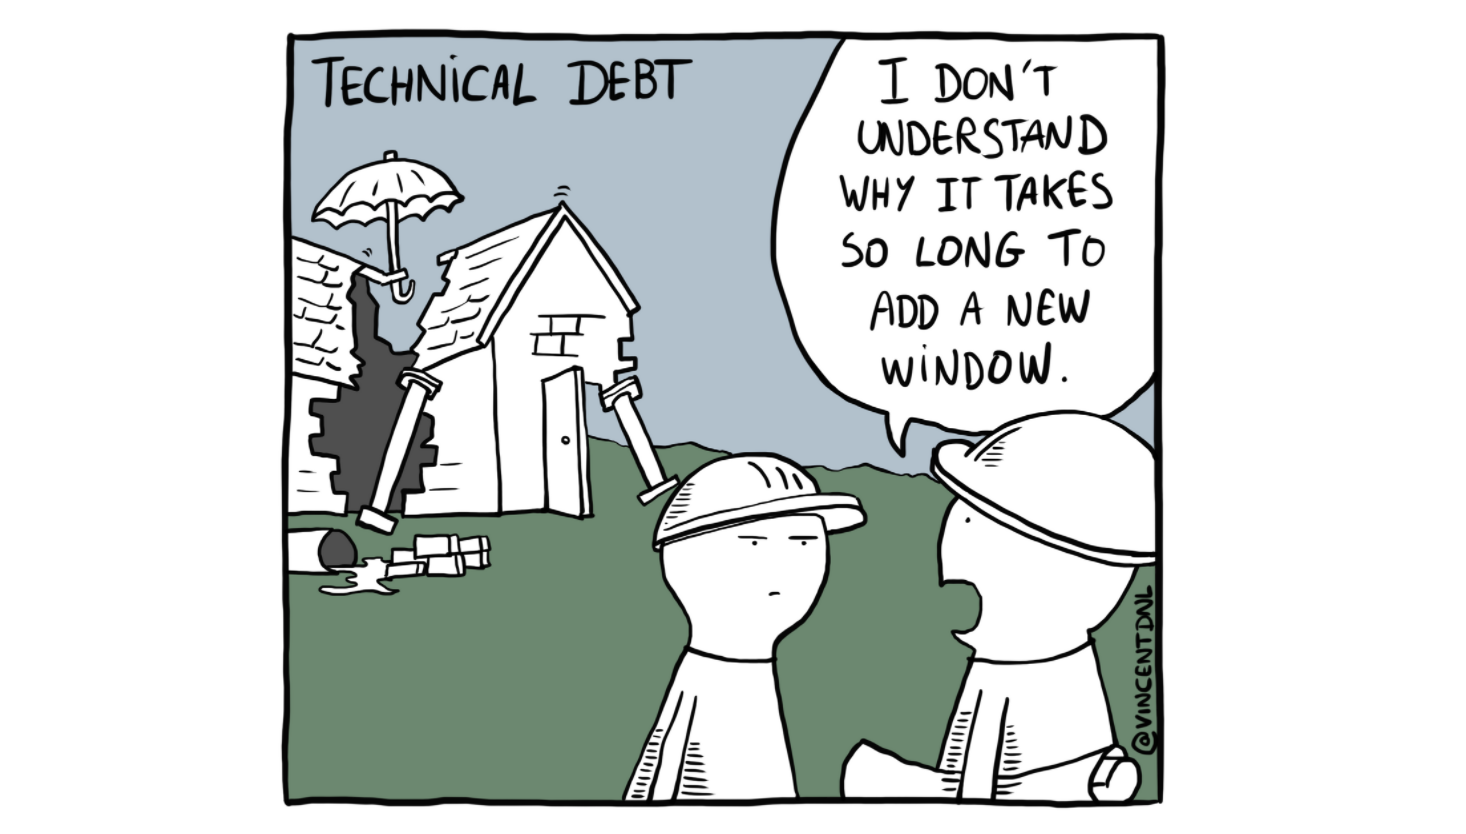 La deuda técnica, uno de los mayores lastres de la agilidad